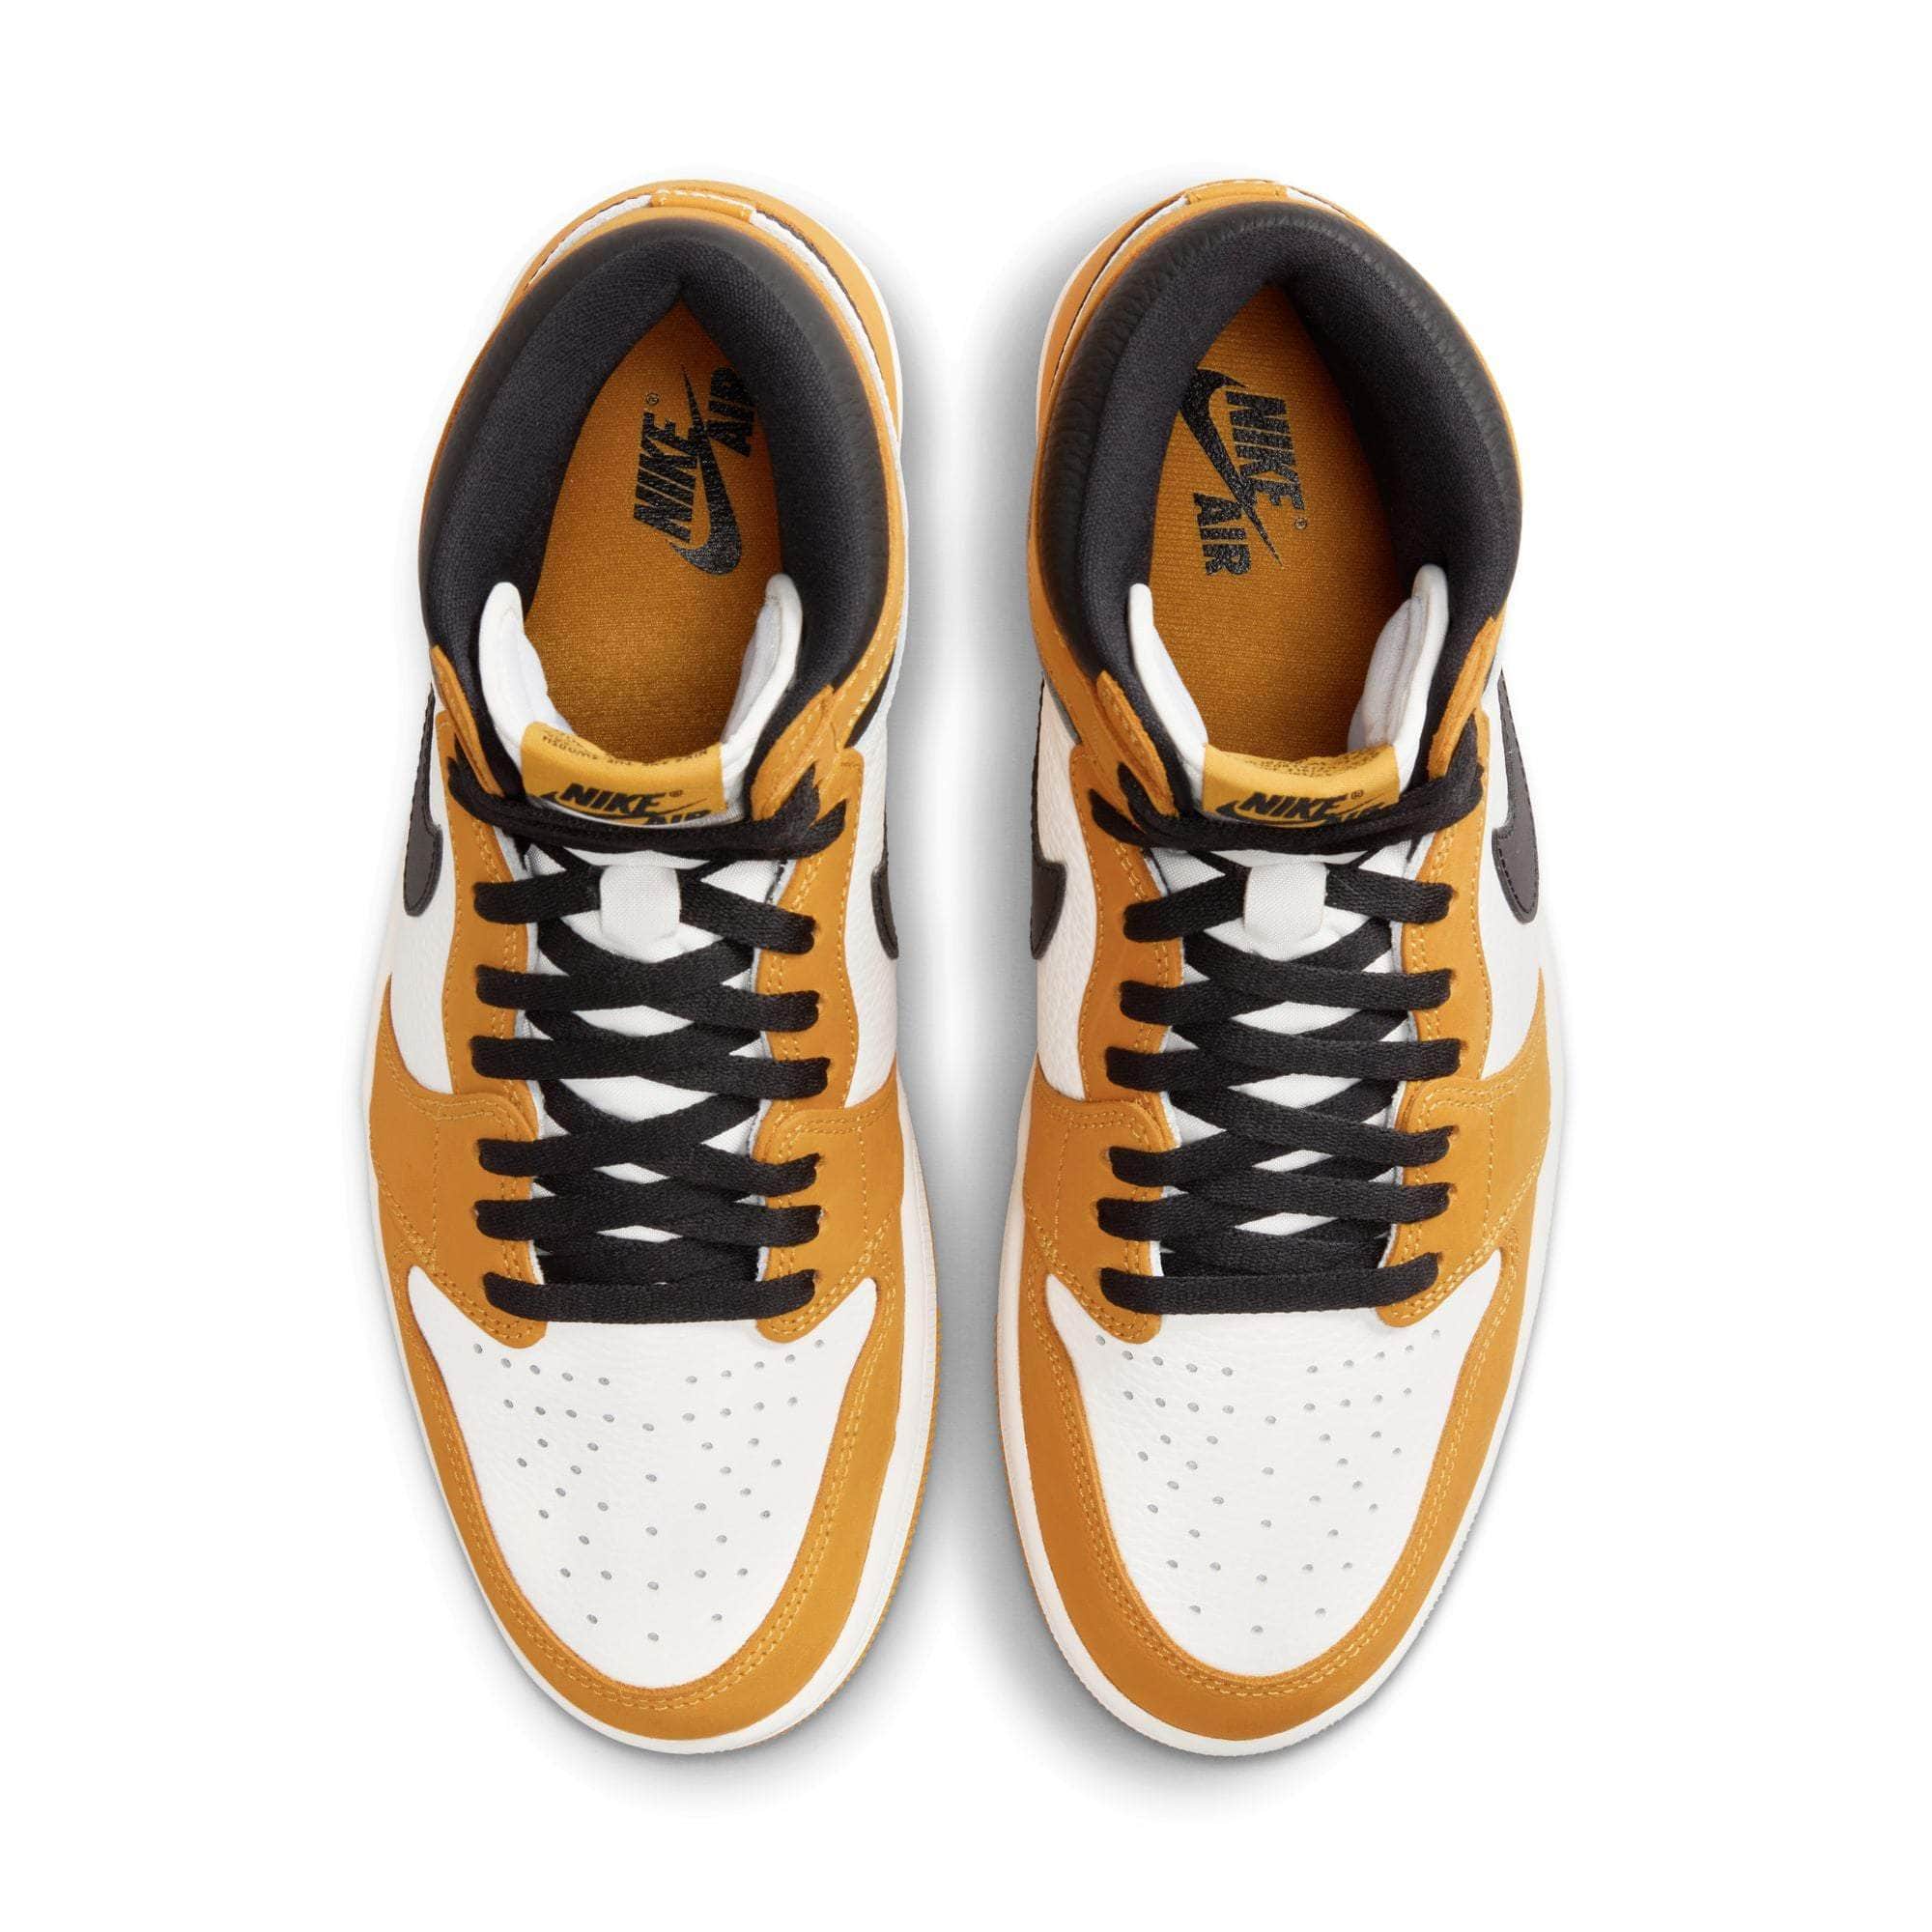 Air Jordan FOOTWEAR Air Jordan 1 Retro High OG “Yellow Ochre” - Men's